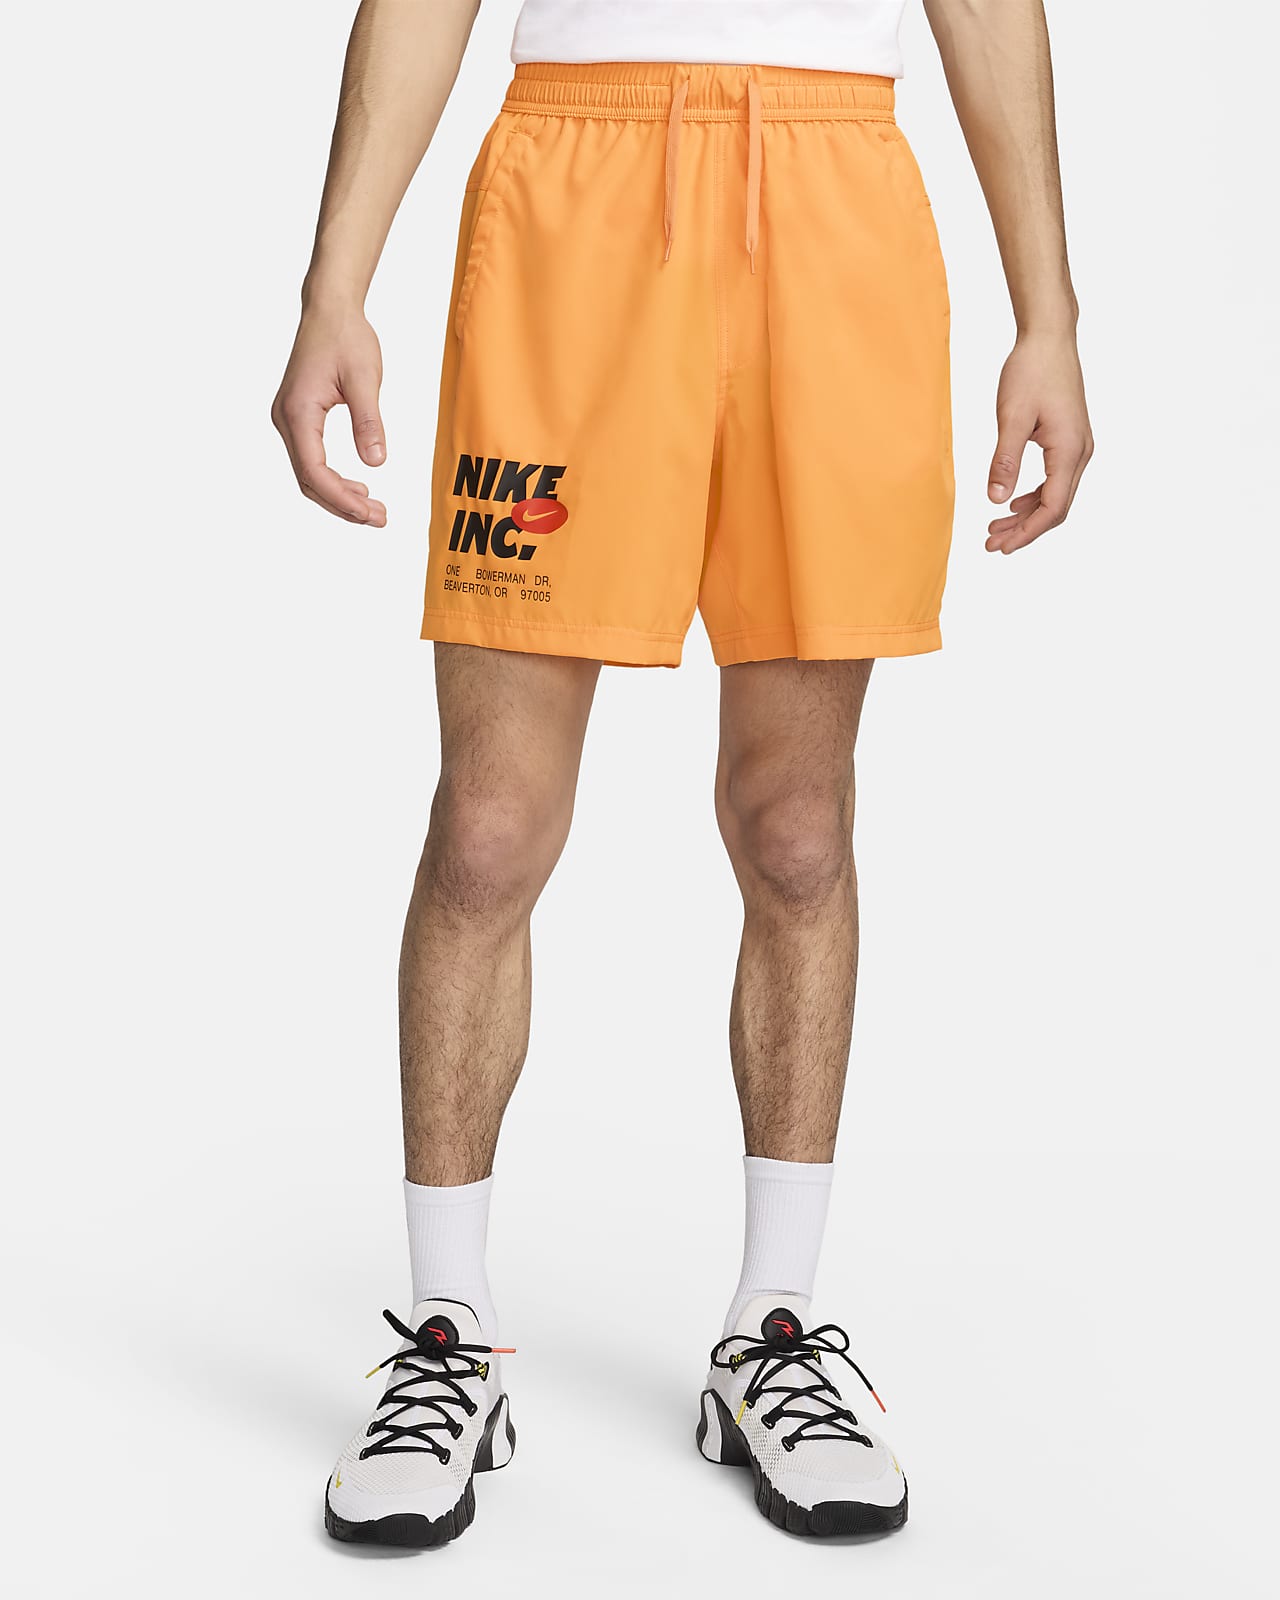 Nike Form Dri-FIT 18 cm-es, bélés nélküli férfi fitneszrövidnadrág